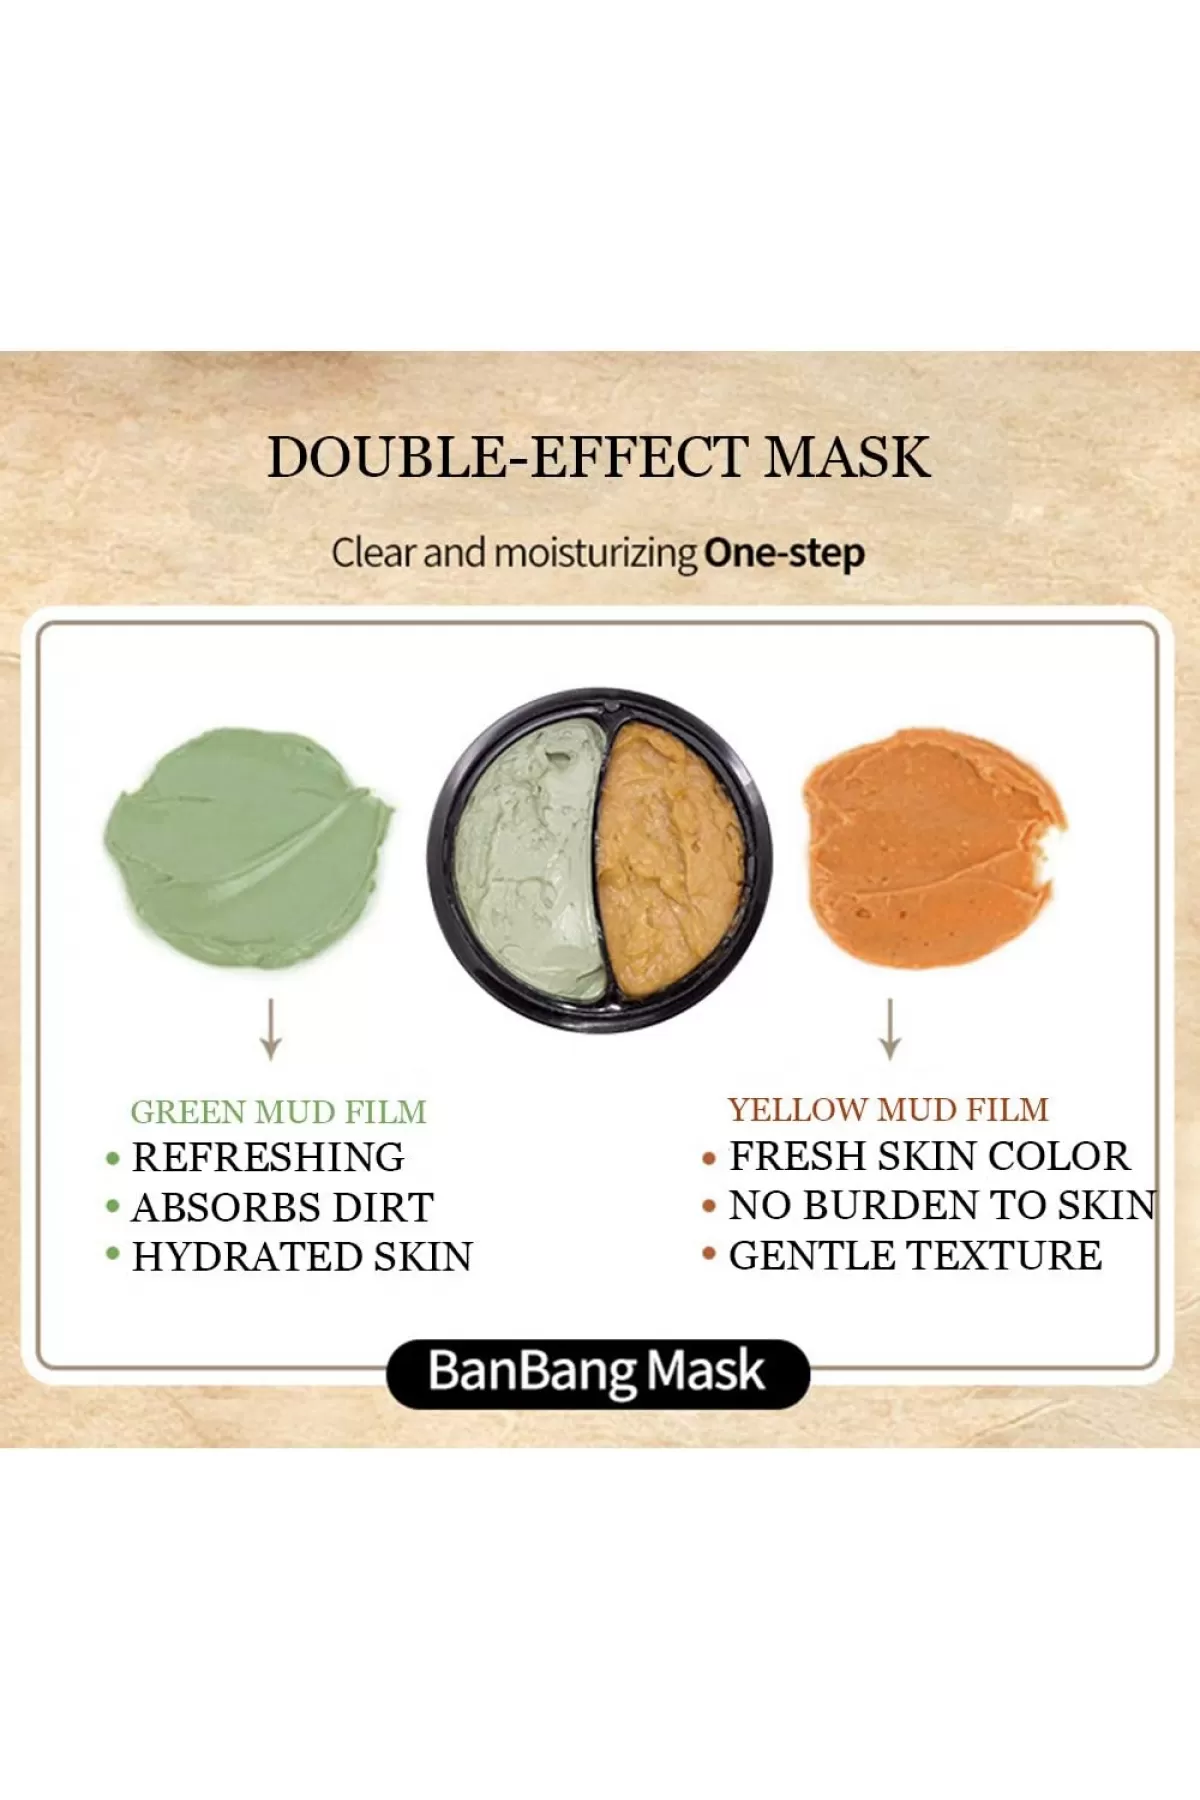 تقویت کننده و پاکسازی پوست بیوآکوآ BIOAQUA ماسک پاکسازی دوقلو